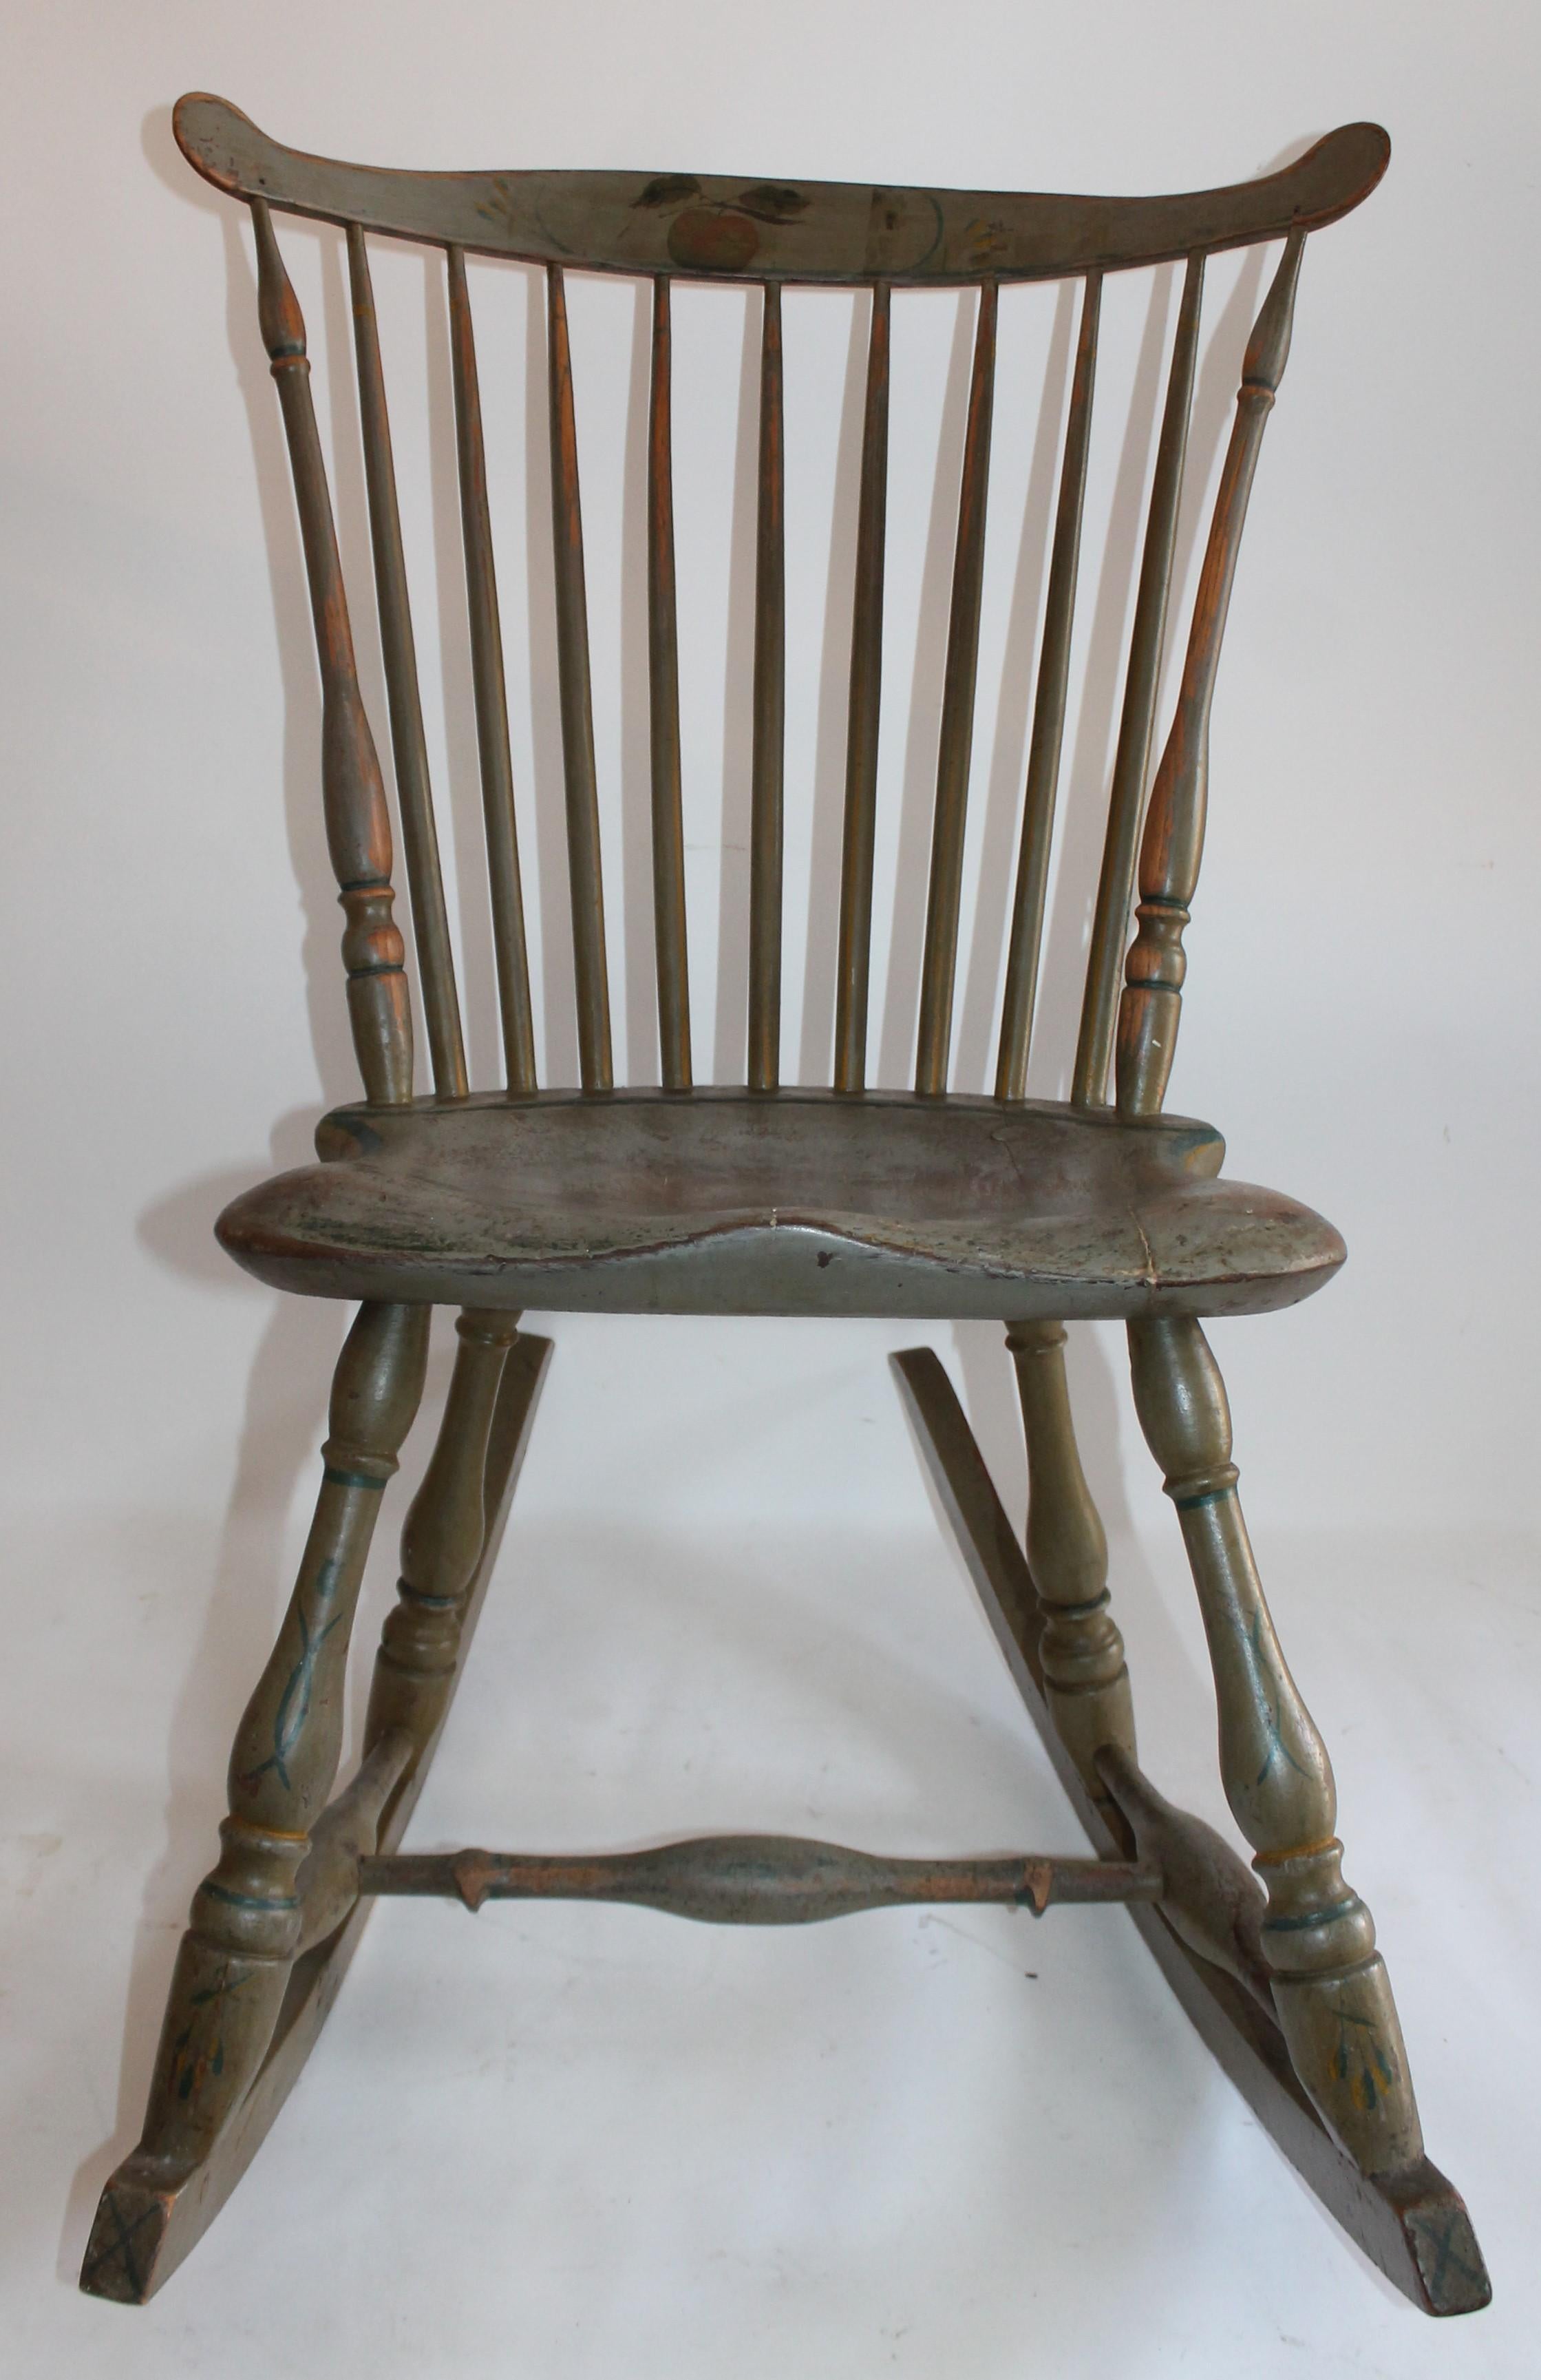 Diese Farbe dekoriert 19. Jahrhundert Pennsylvania Windsor Schaukelstuhl hat große Form und in gutem Zustand. Der Sattelsitz und die Geigenrückseite haben eine großartig bemalte Oberfläche mit einem auf die Vorderseite gemalten Apfel. Dies wurde in